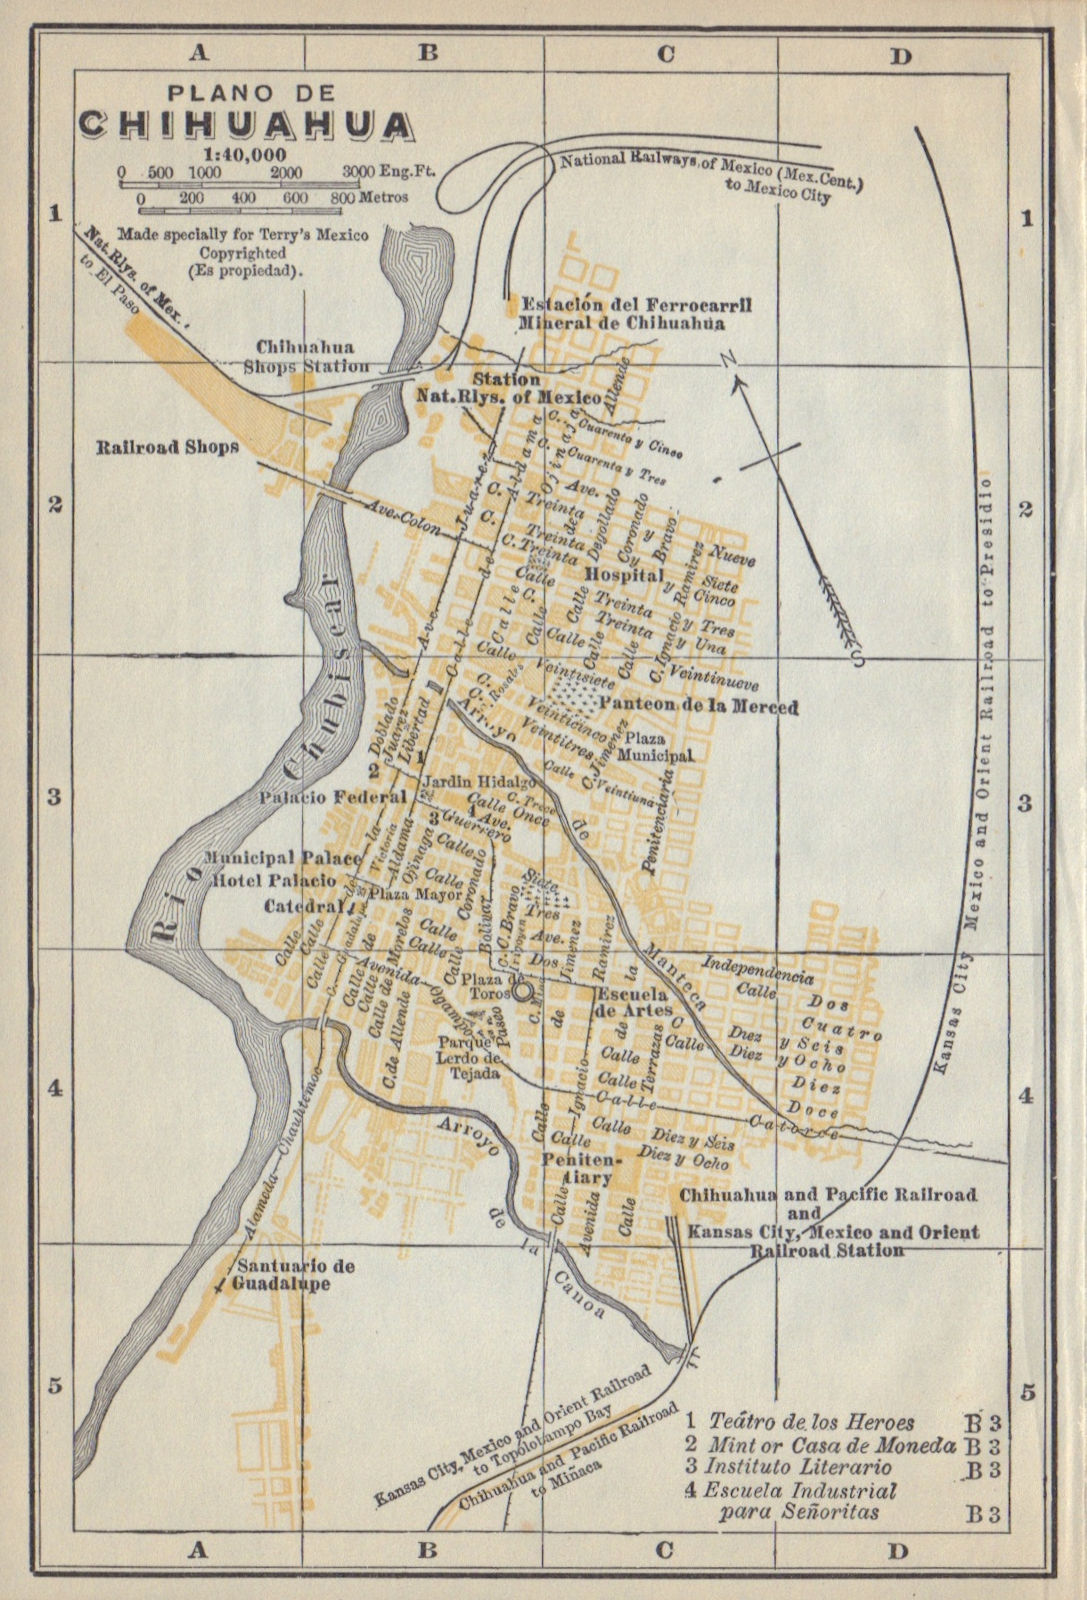 Plano de CHIHUAHUA, Mexico. Mapa de la ciudad. City/town plan 1938 old